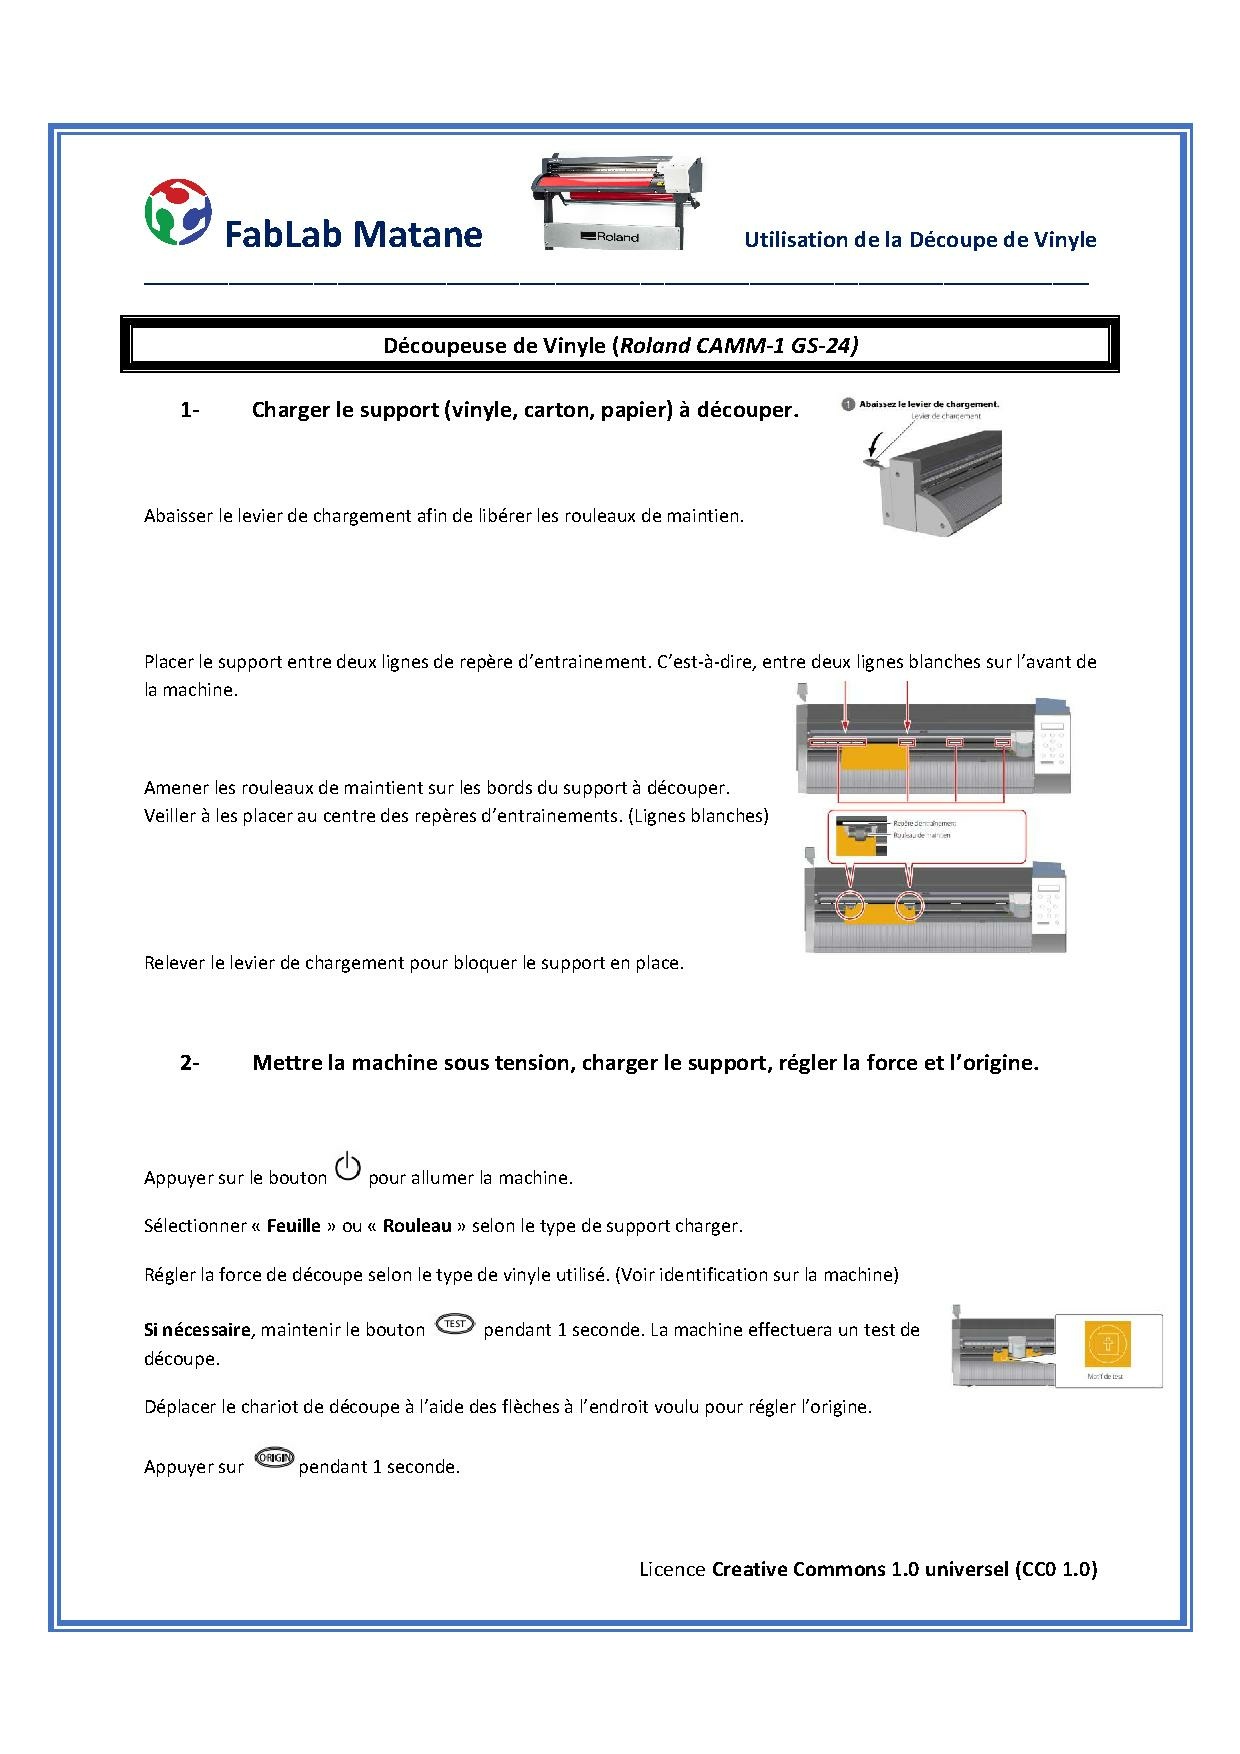 Guide pour Roland GS-24 par FabLAB Matane.pdf